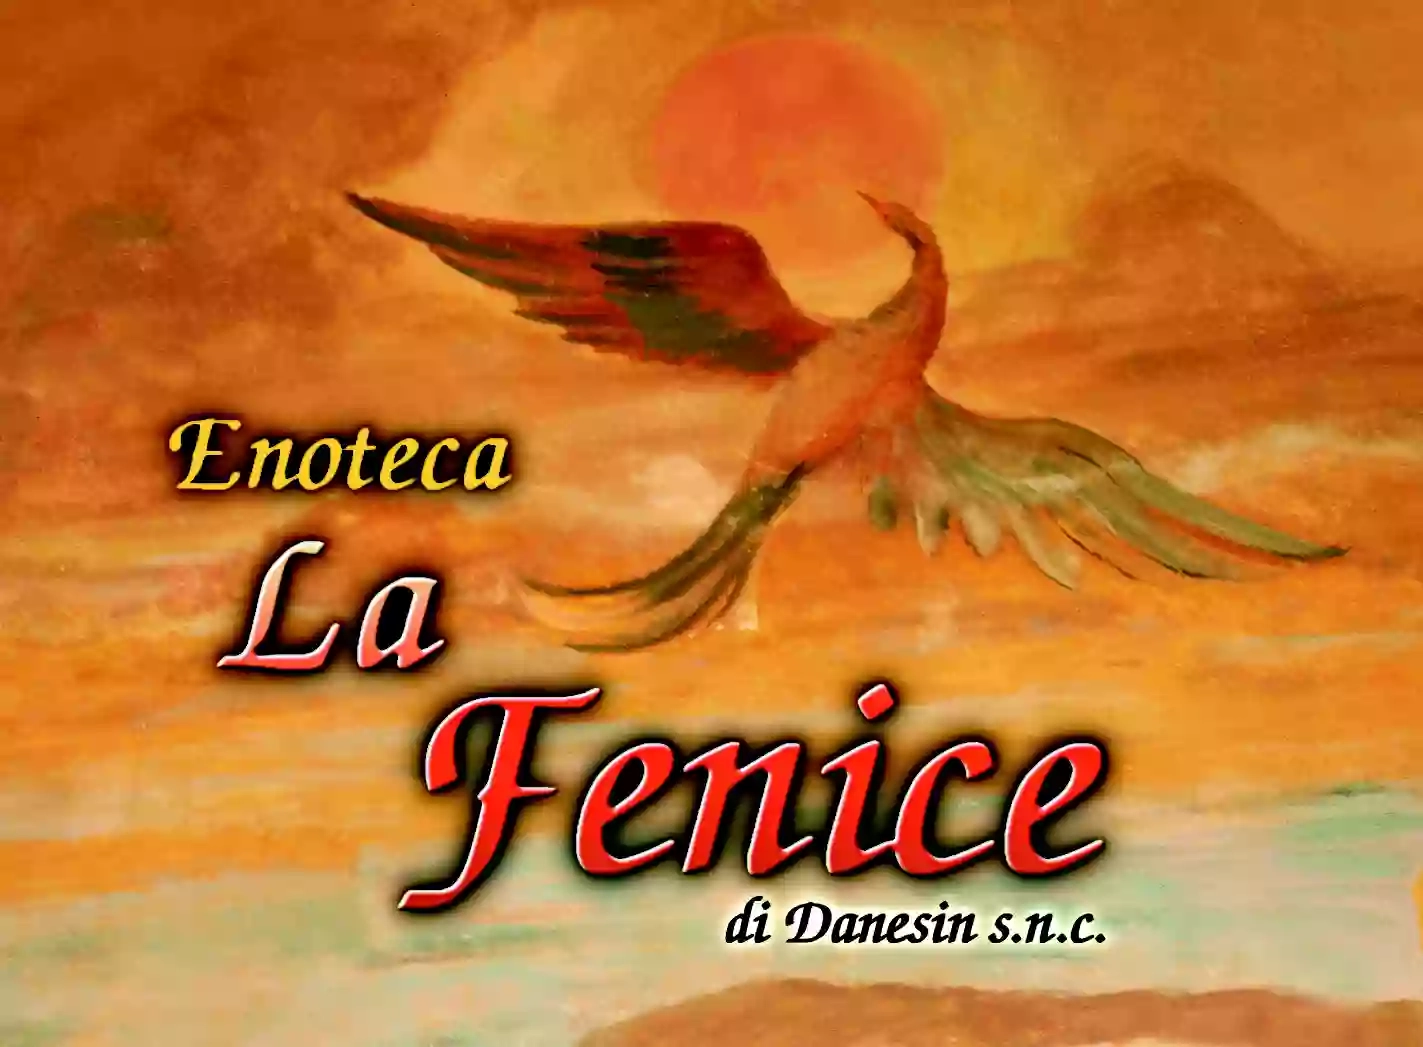 Enoteca La Fenice